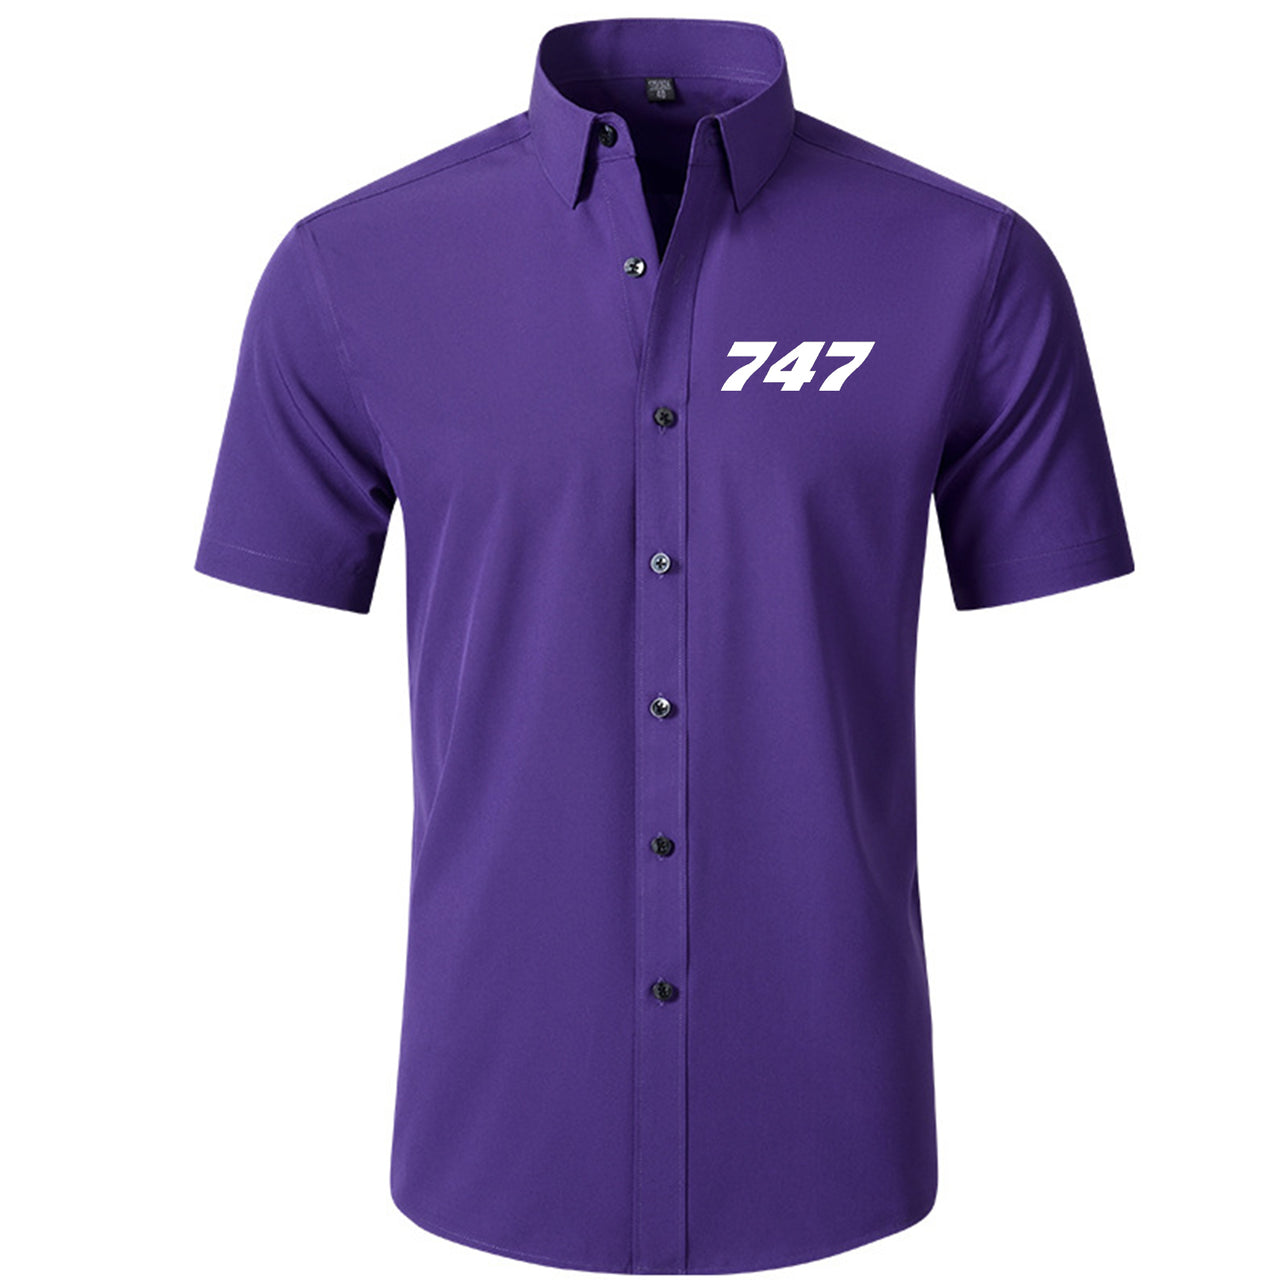 747 Flat Text Designed Short Sleeve Shirts